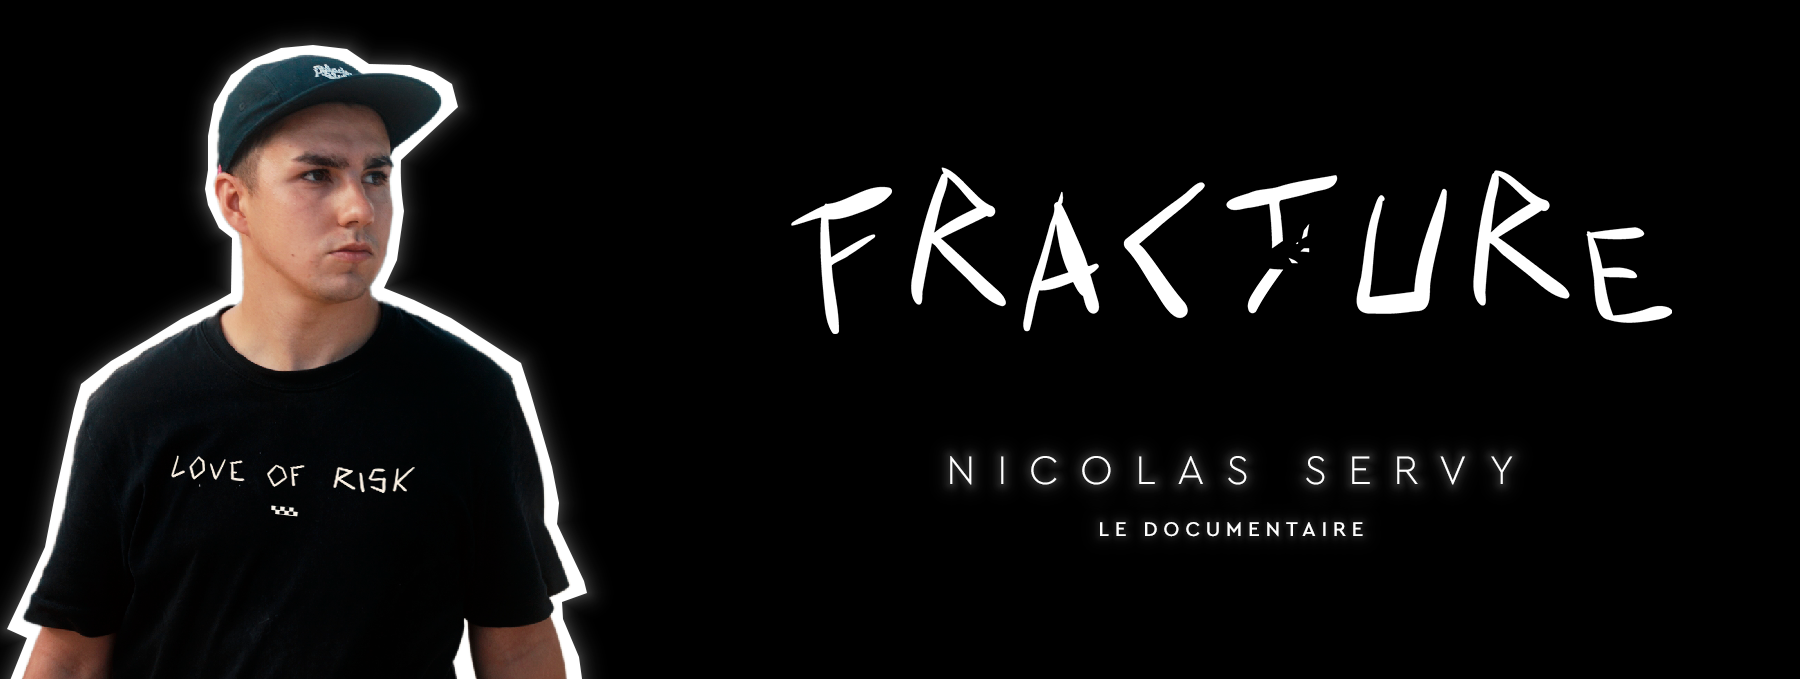 Nicolas Servy par Fracture Mindset 